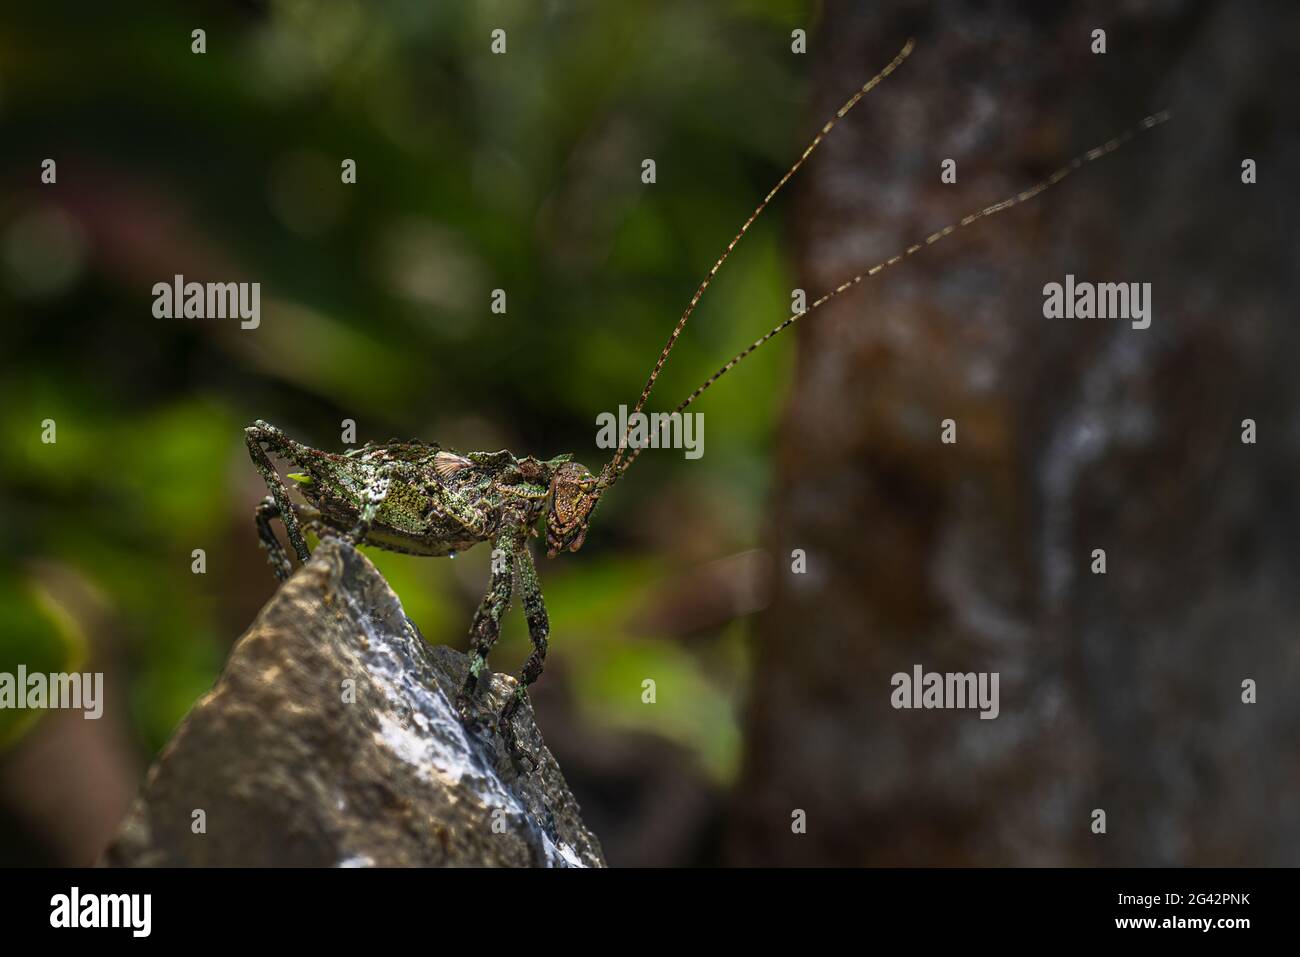 Lichen sauterelle macro bon exemple de biodiversité Banque D'Images